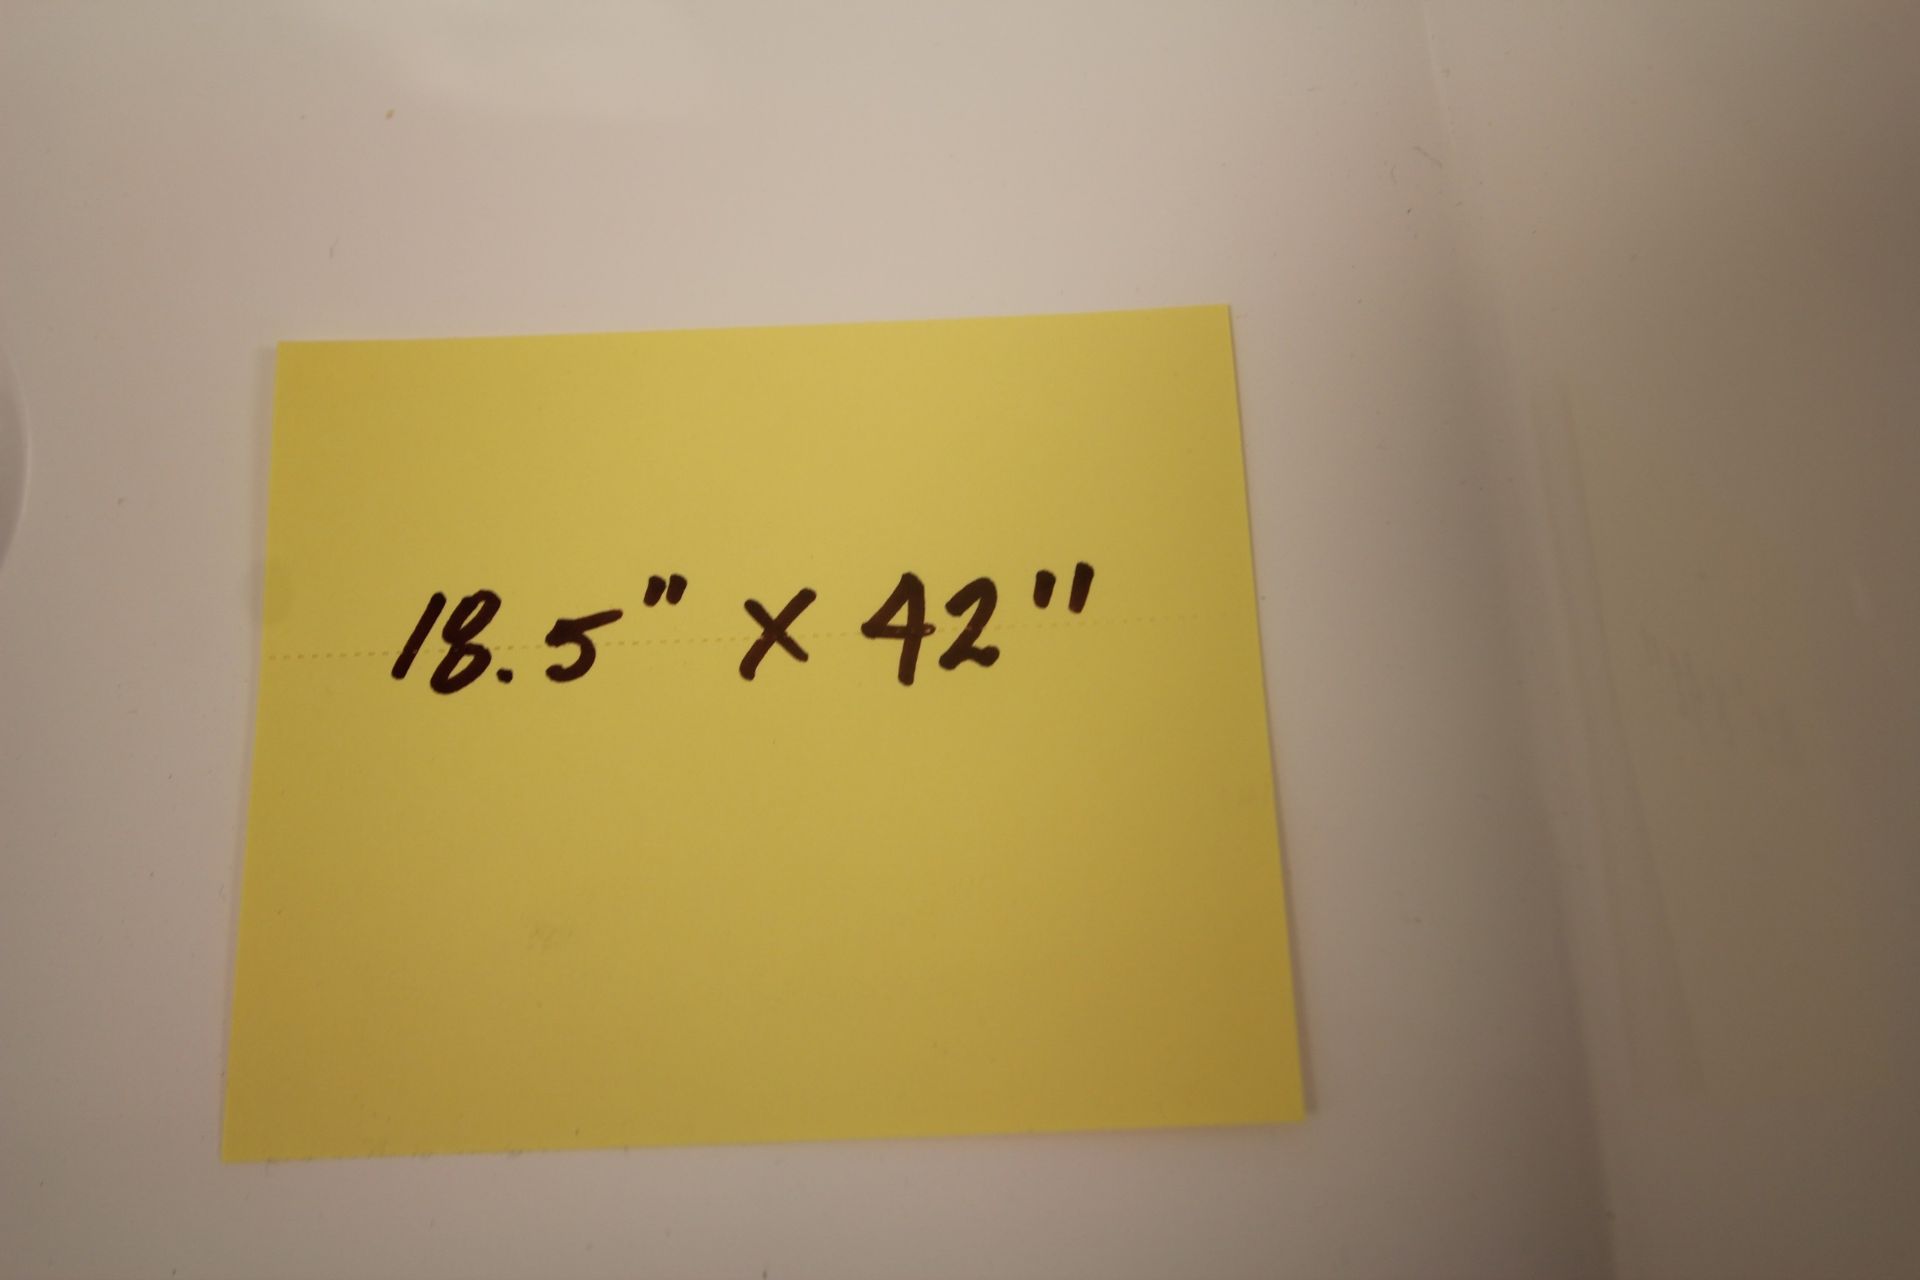 SHOWROOM DISPLAY FLOATING BATHROOM VANITY W/ SINK, CUPBOARDS, 18.5" X 42" - Image 3 of 3